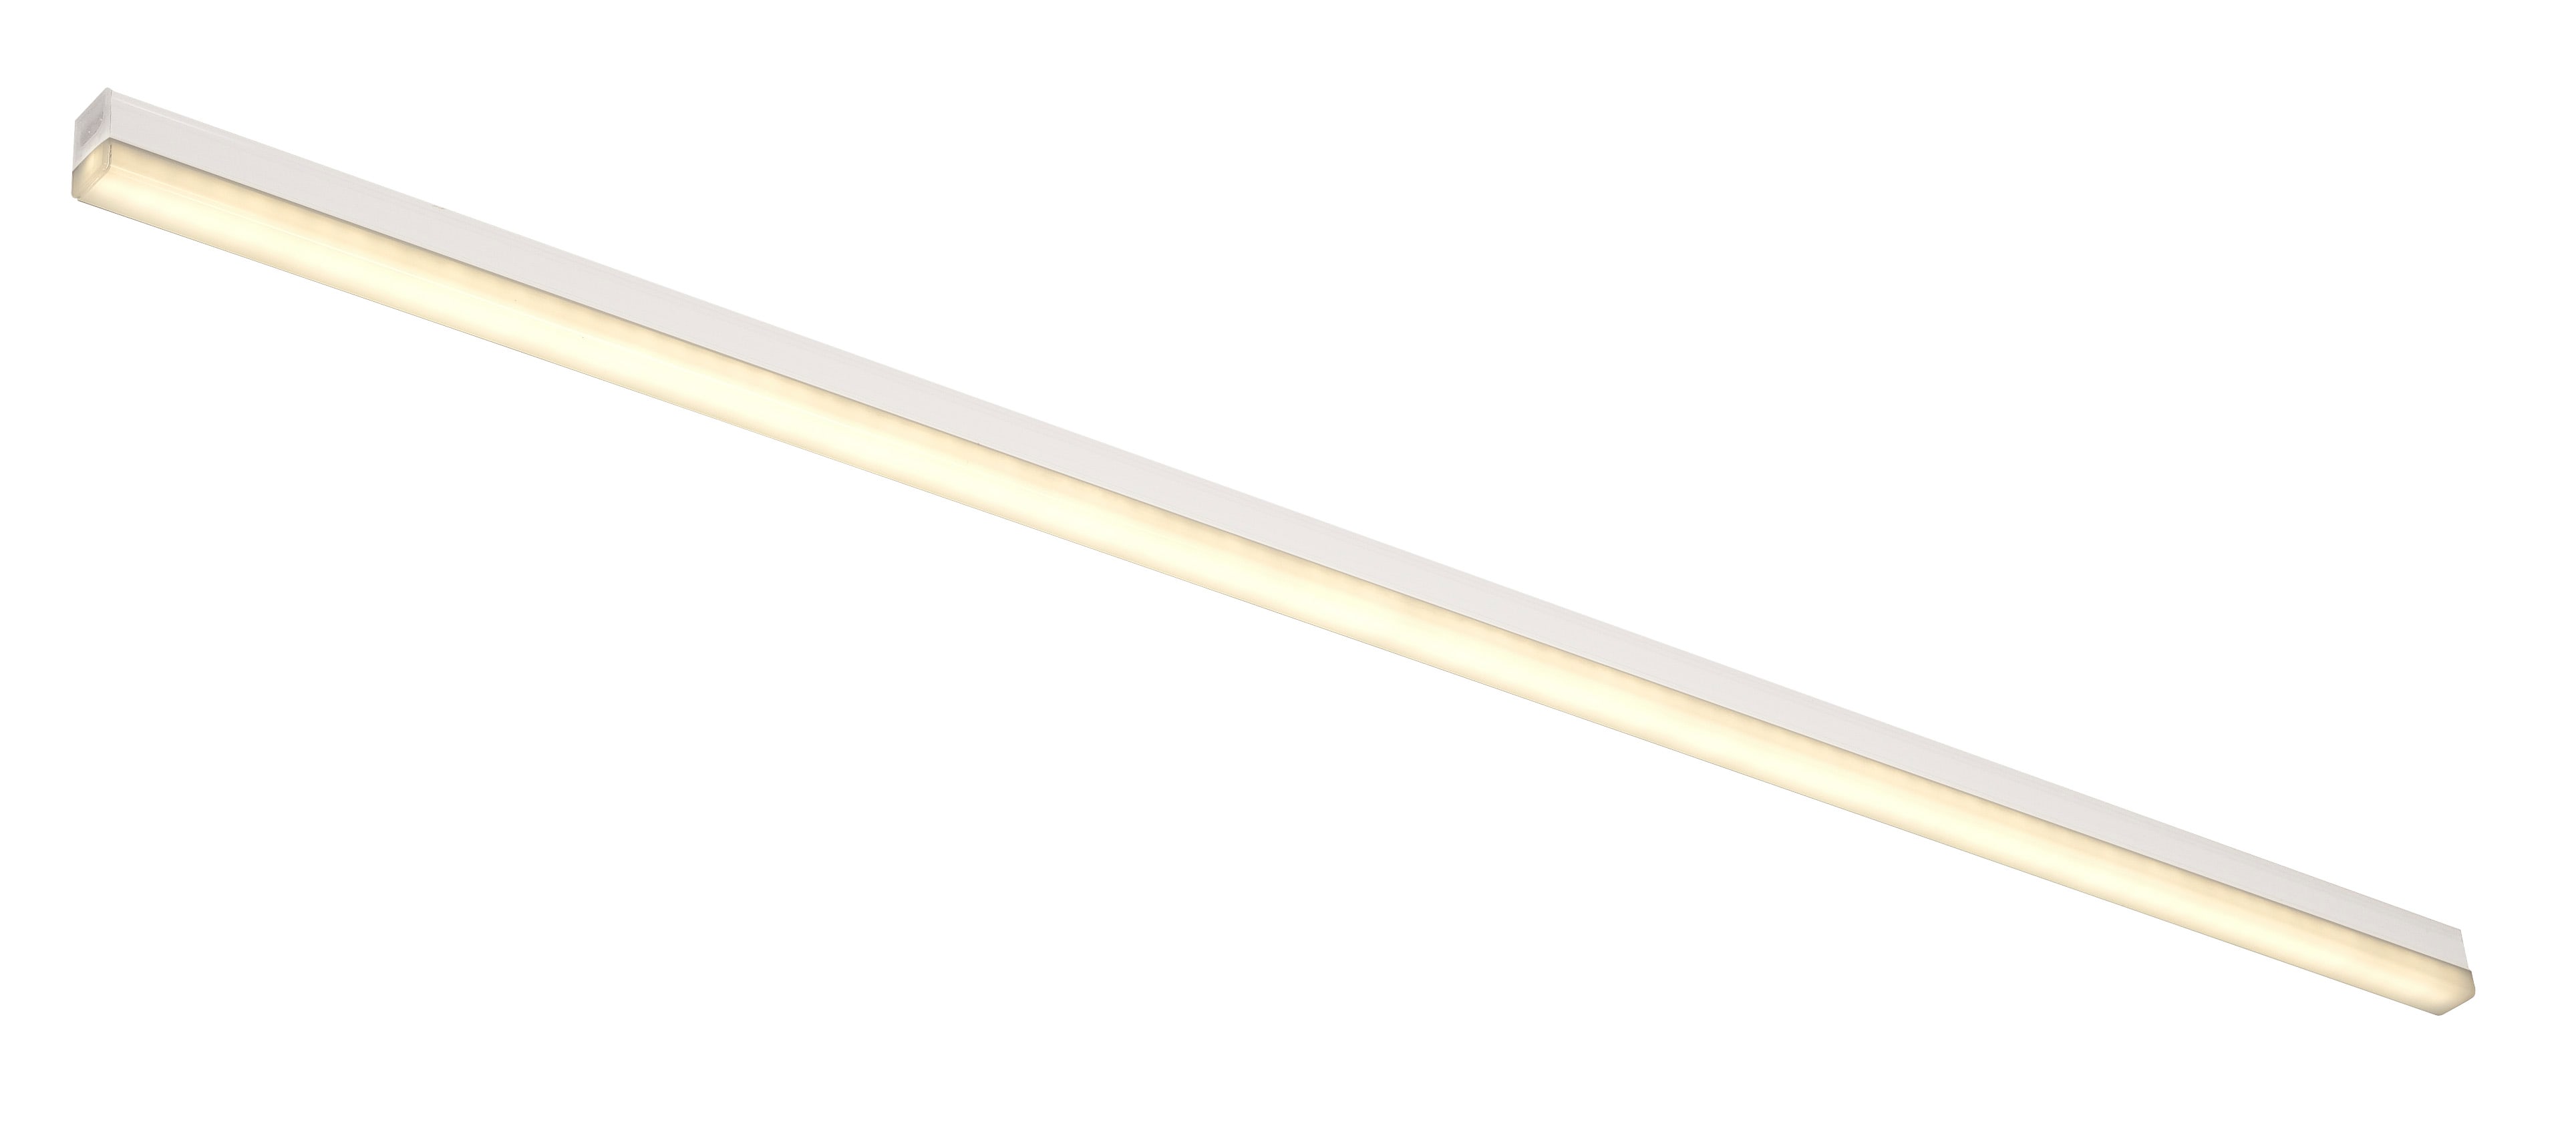 Slv. - BATTEN LED, reglette LED, interieur, 117,5 cm, blanc mat, LED, 16,5W, 3000K